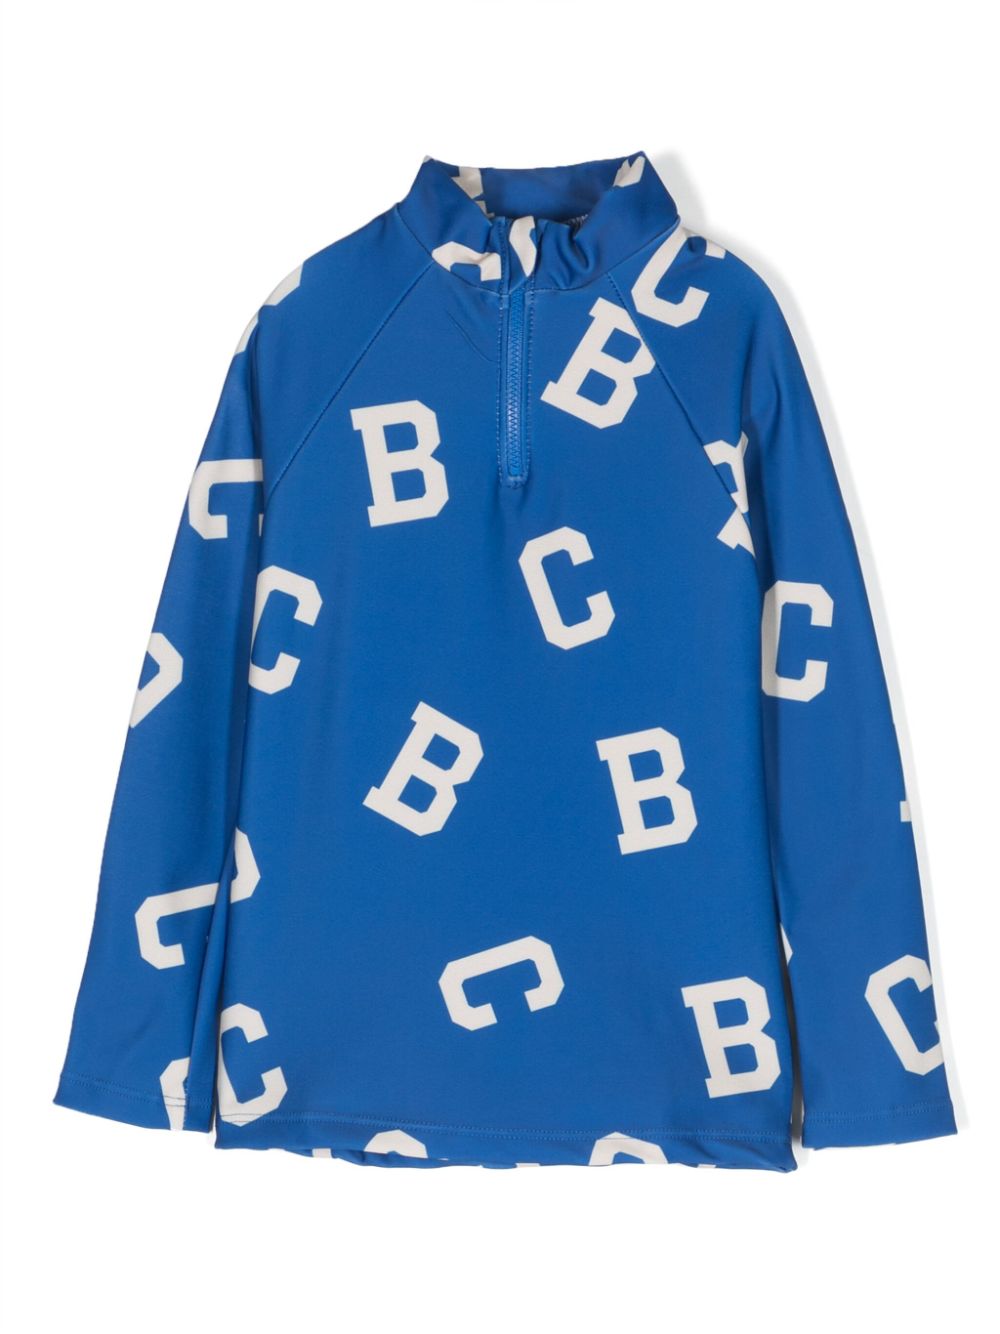 Bobo Choses all-over logo-print sport shirt - Blue 223AC027